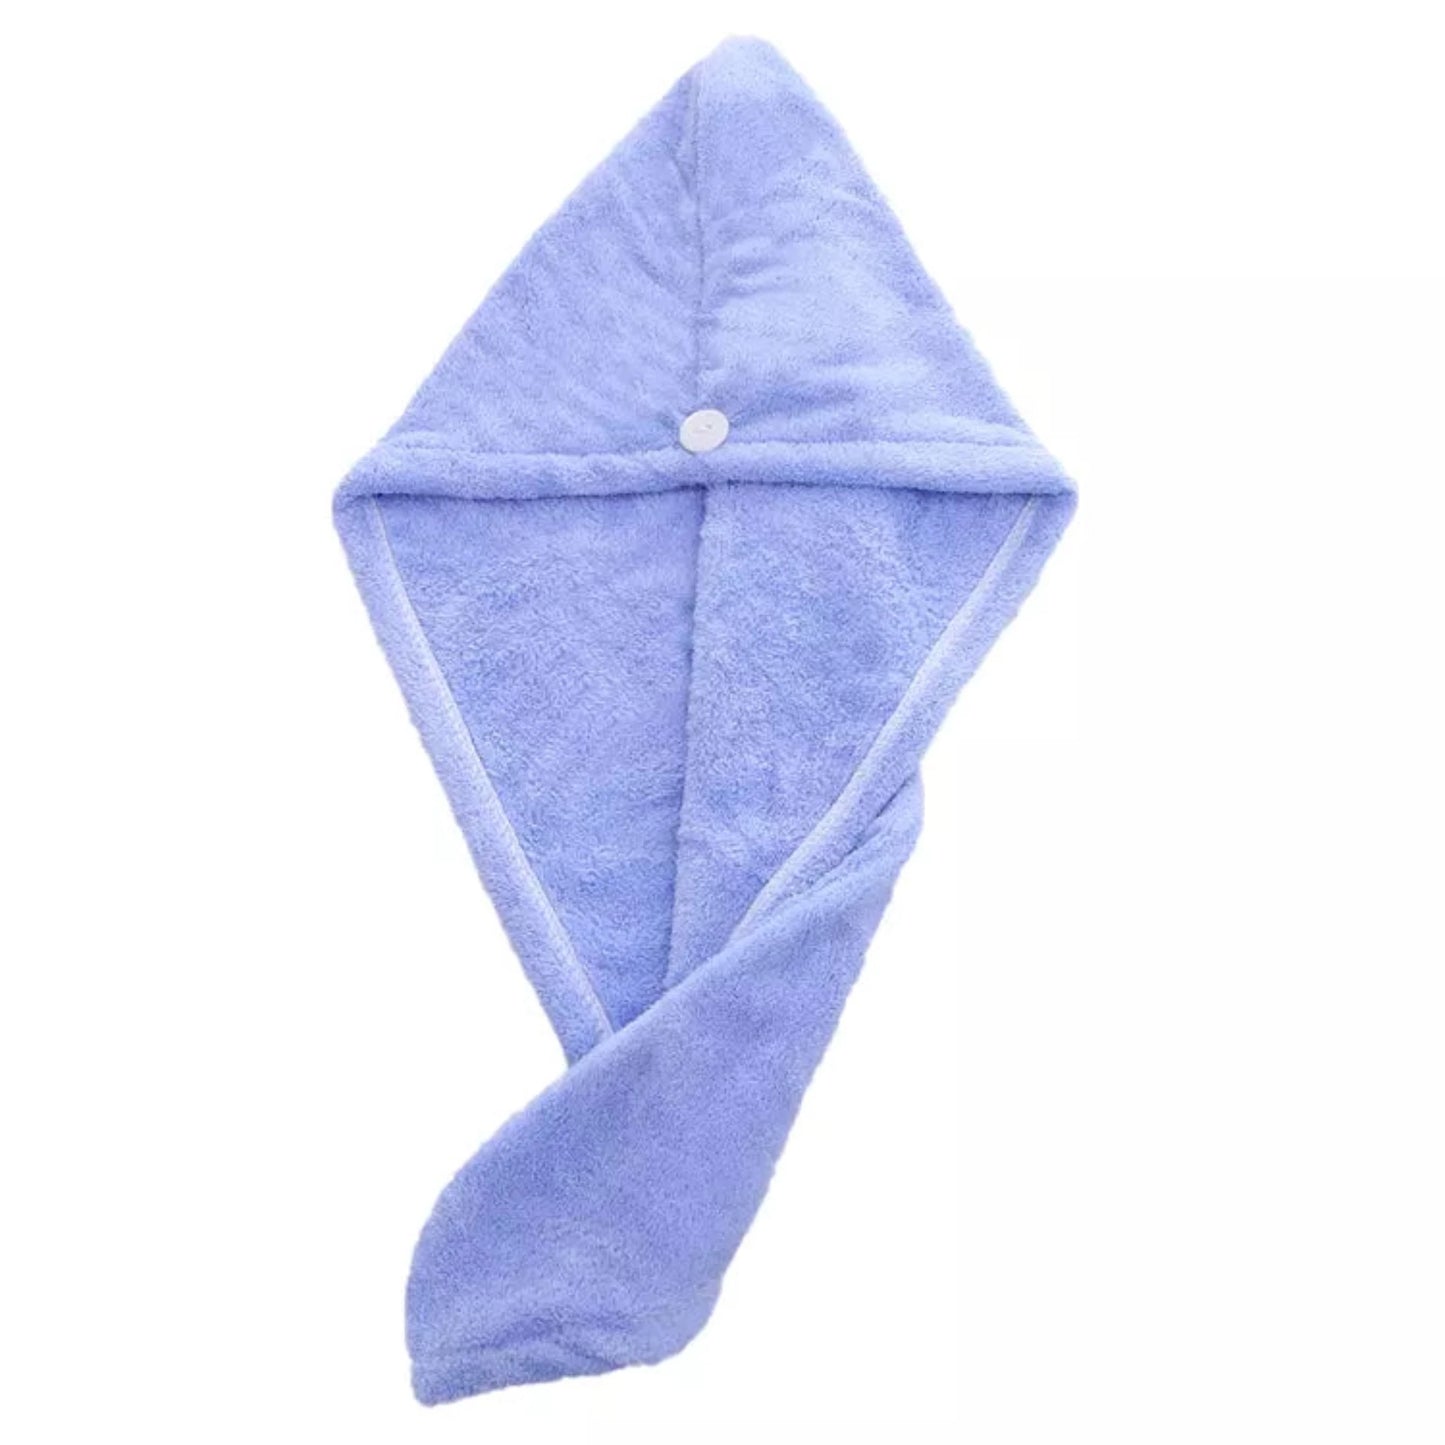 Absorbent quick-drying fleece microfiber hair towel